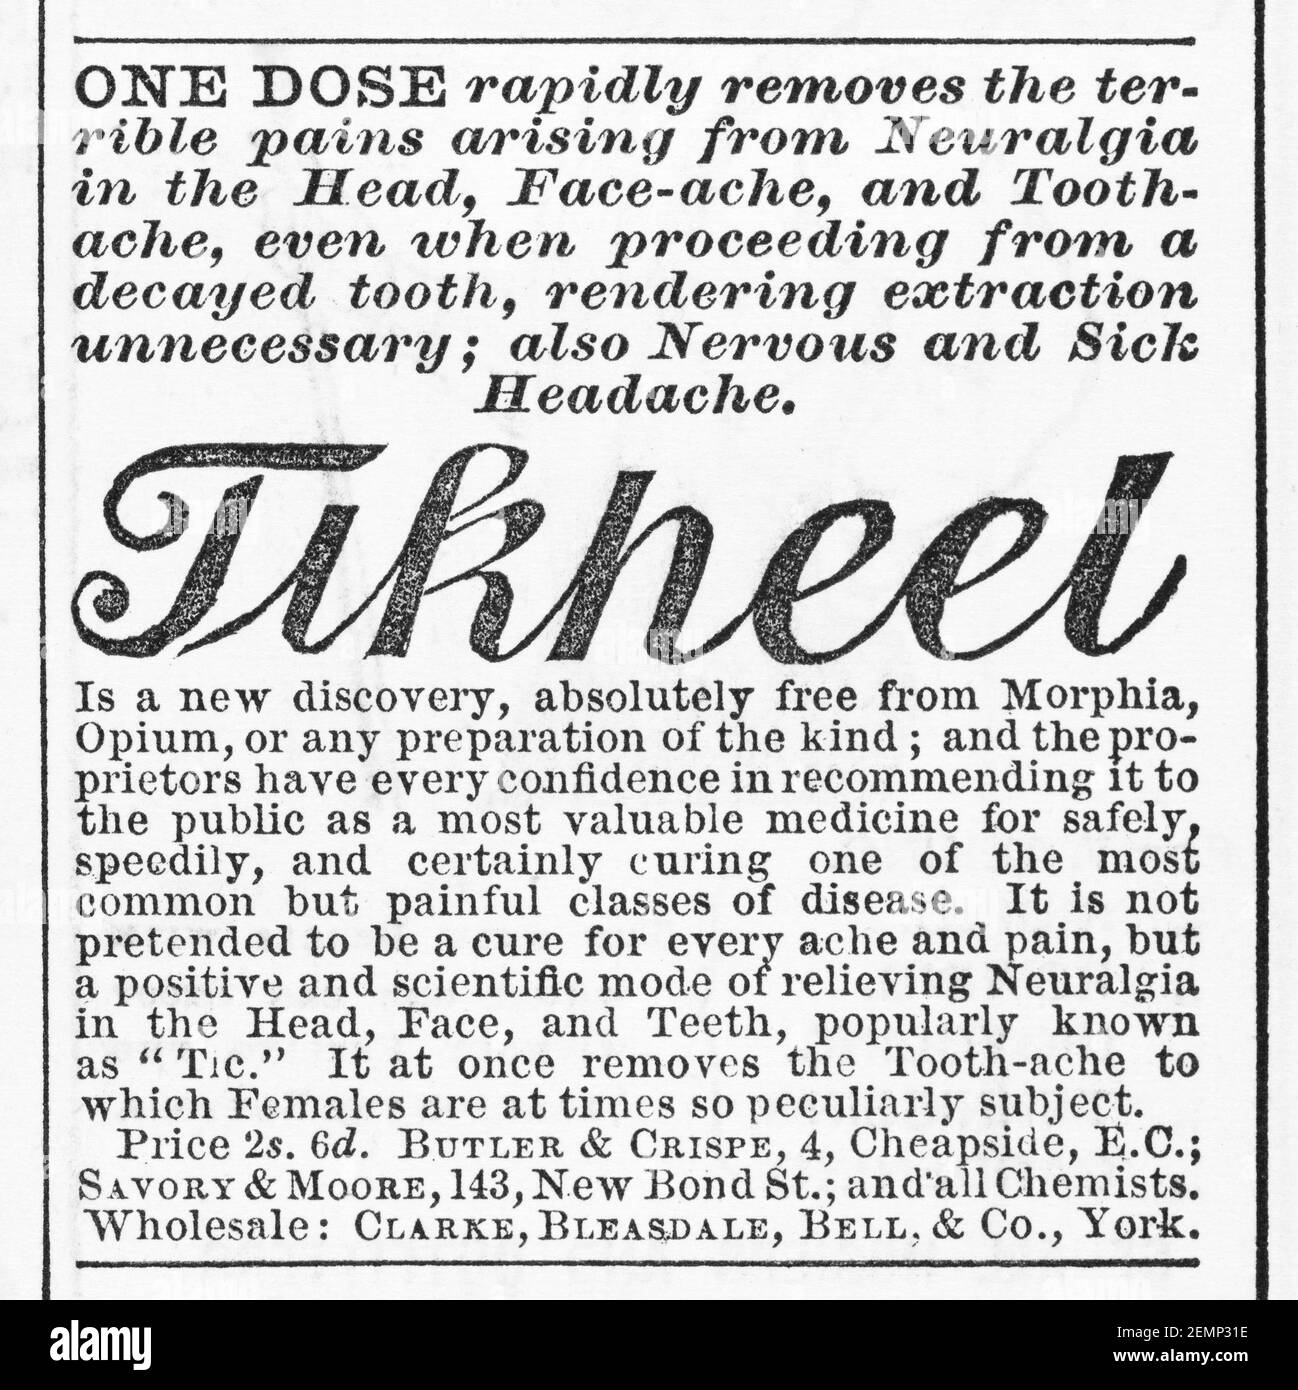 Vecchia rivista vittoriana carta da giornale Tikheel miracolo cura pubblicità da 1883 - prima degli standard pubblicitari. Storia della medicina e della pubblicità. Foto Stock